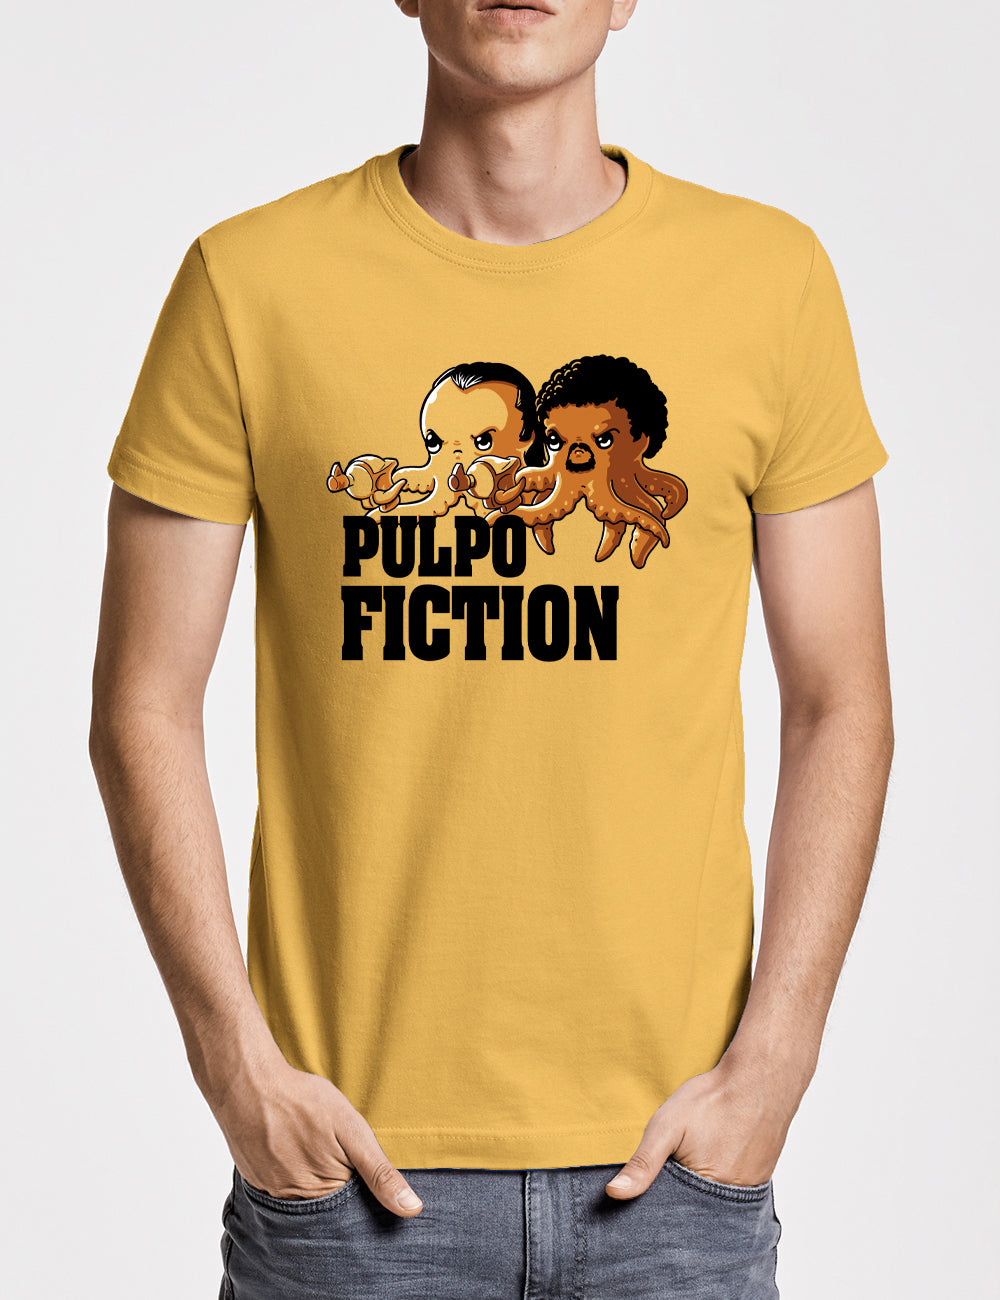 Pulpo Fiction